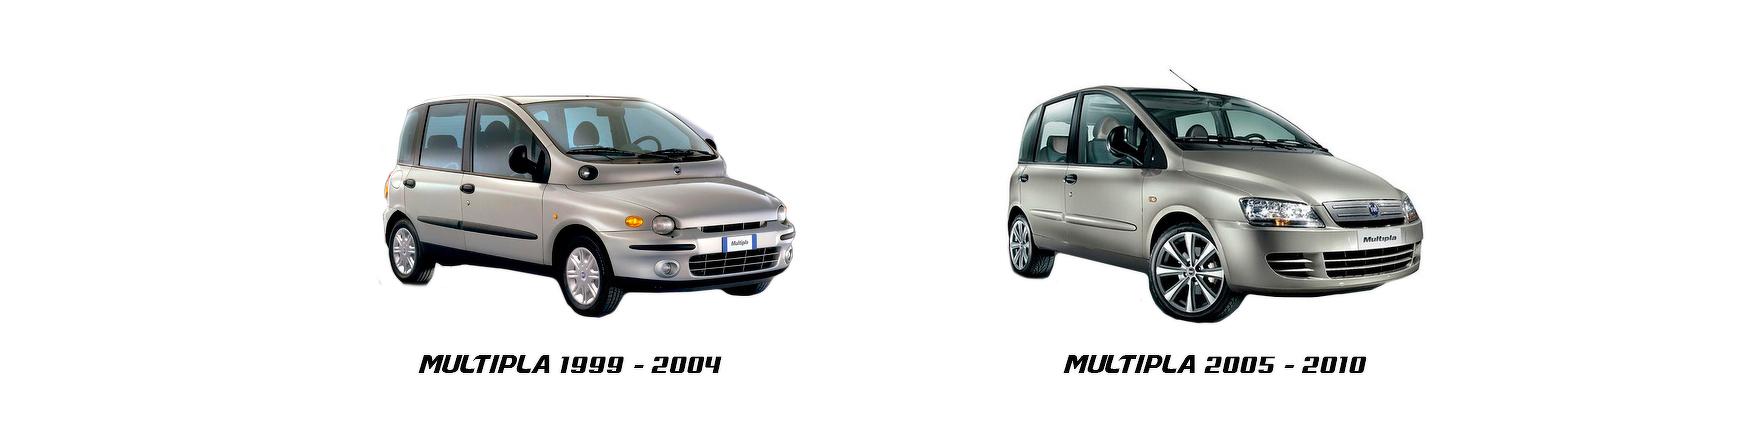 Piezas y Recambios de Fiat Multipla (186) de 1999 a 2010 | Veramauto.es